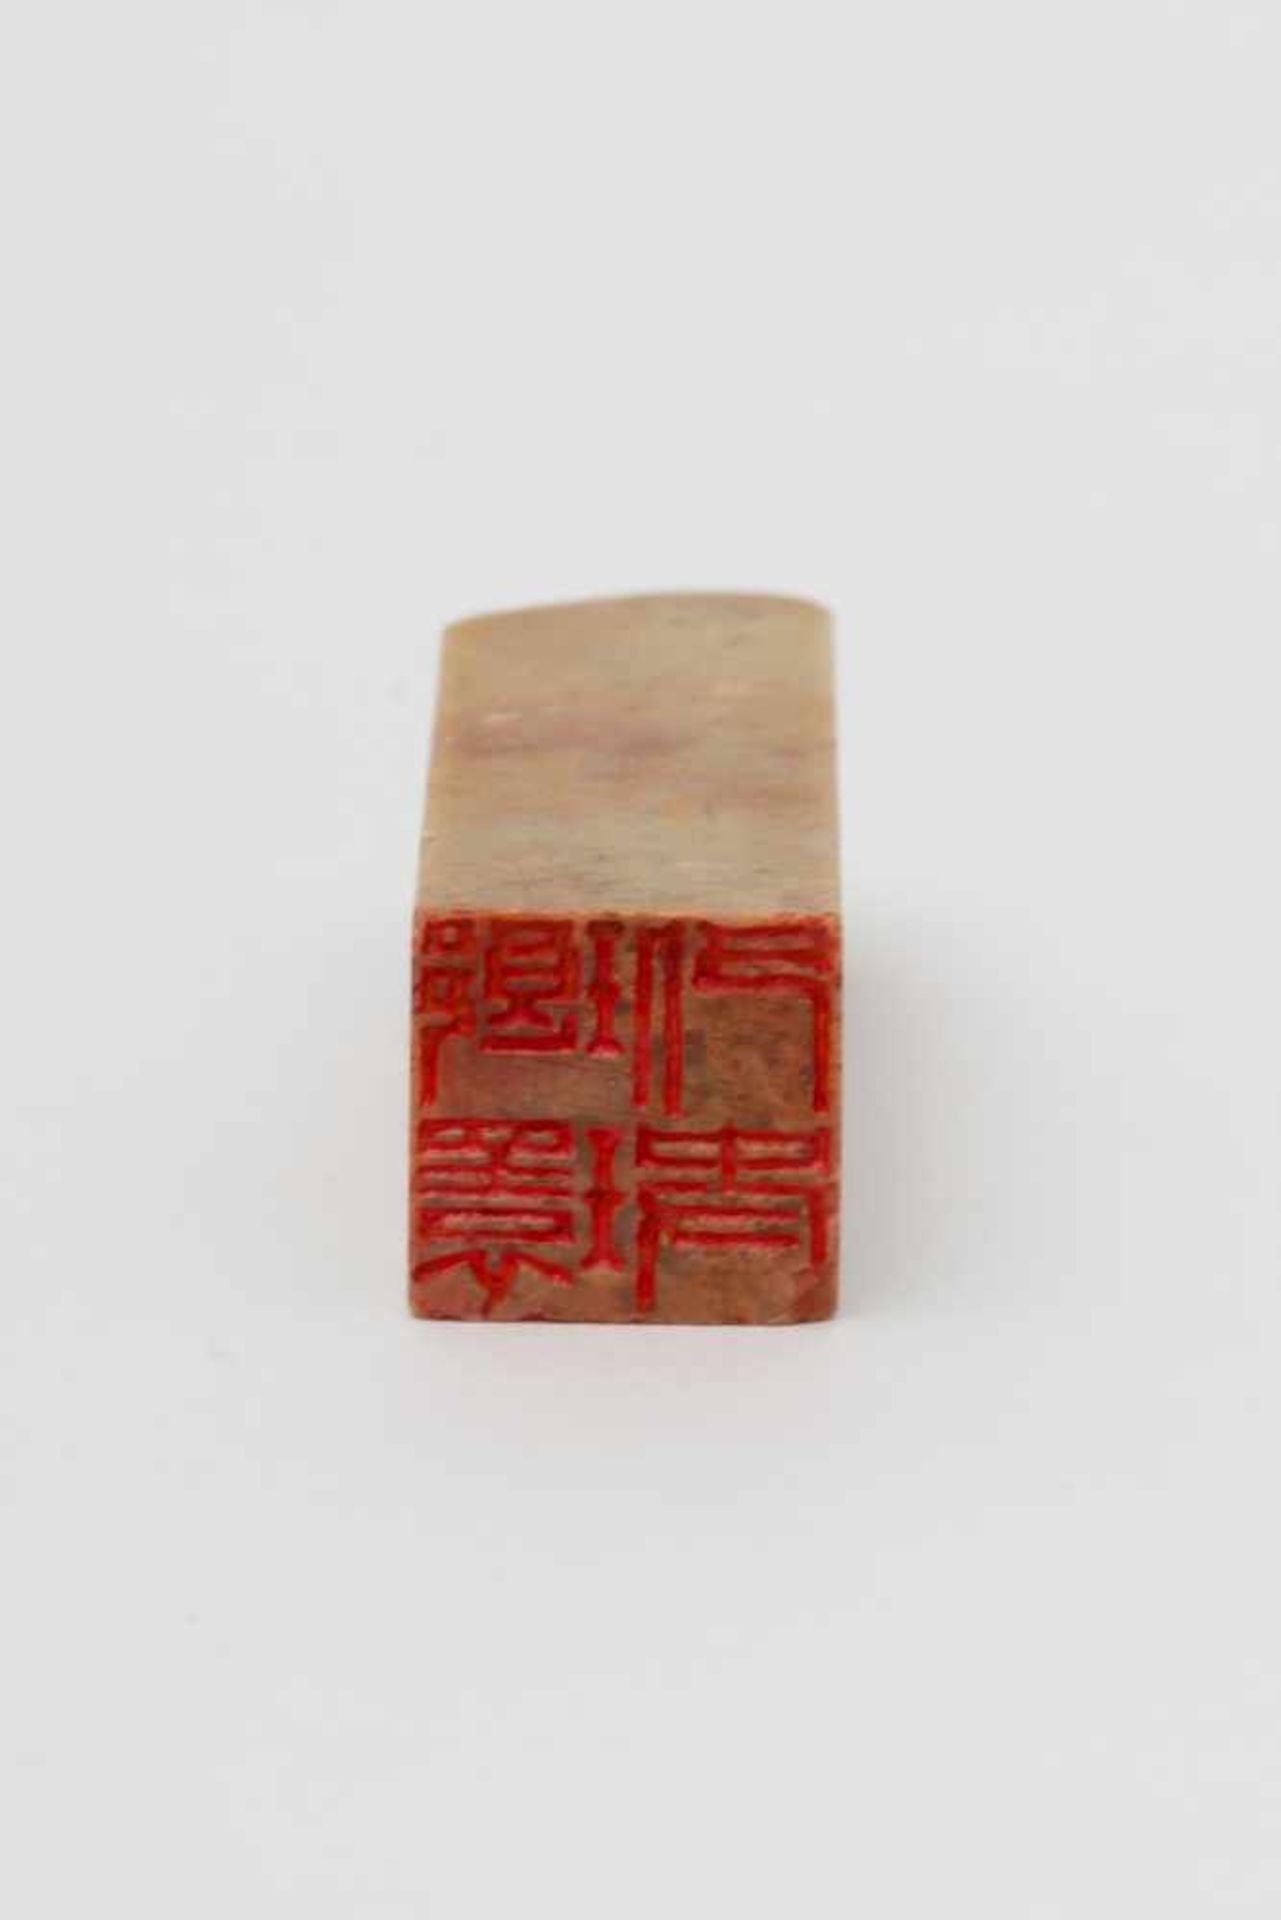 Chine - Sceau carré en stéatite crème orné d'un tigre - A base carrée. - 7 x 2 [...] - Image 4 of 4